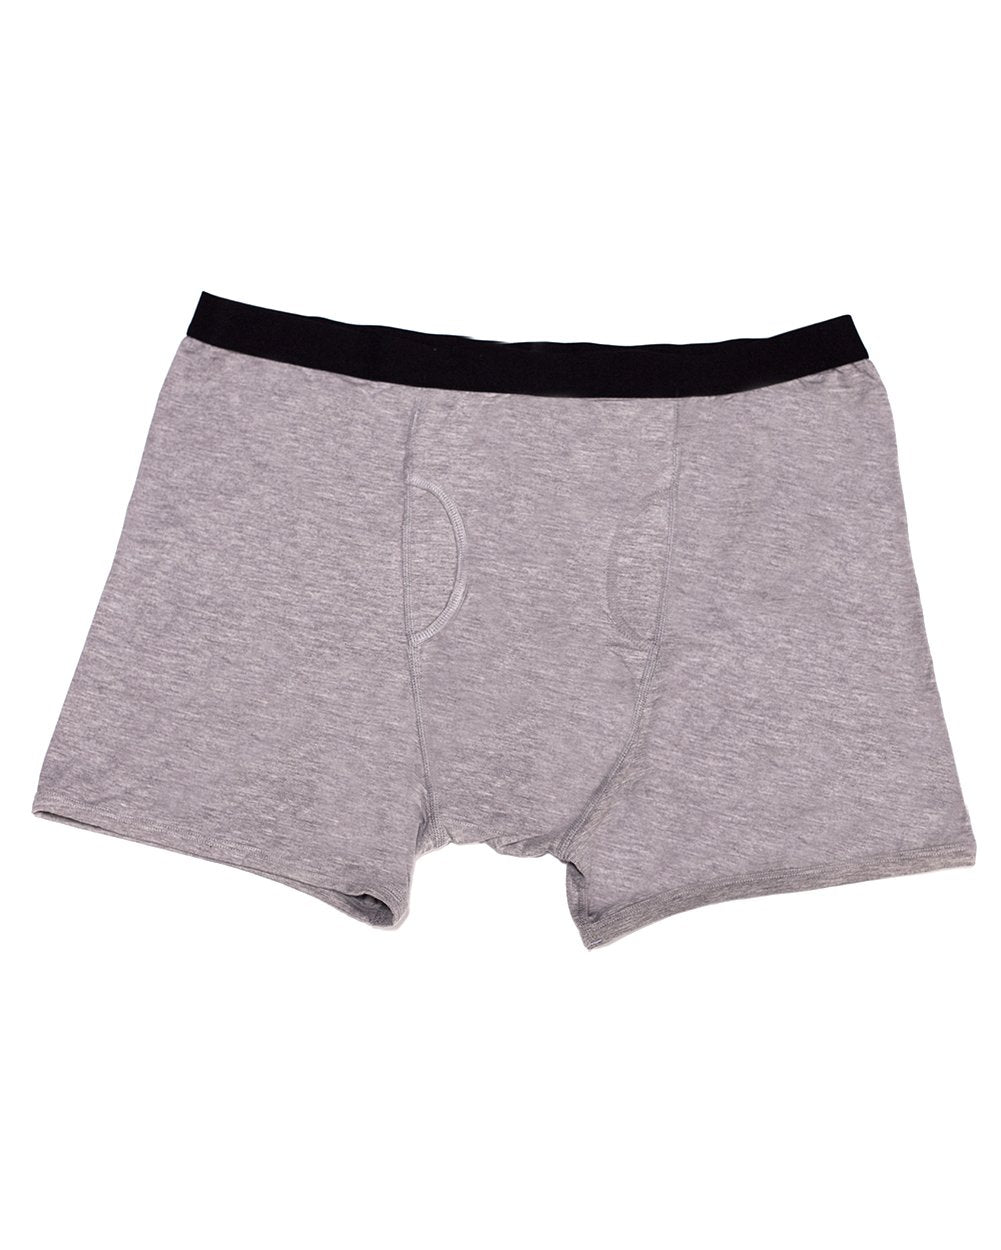 Pocket Underwear for Men with Secret Hidden Pocket, Travel Stash Boxer  Brief, Large Size 2 Packs (Dark Blue) at  Men's Clothing store